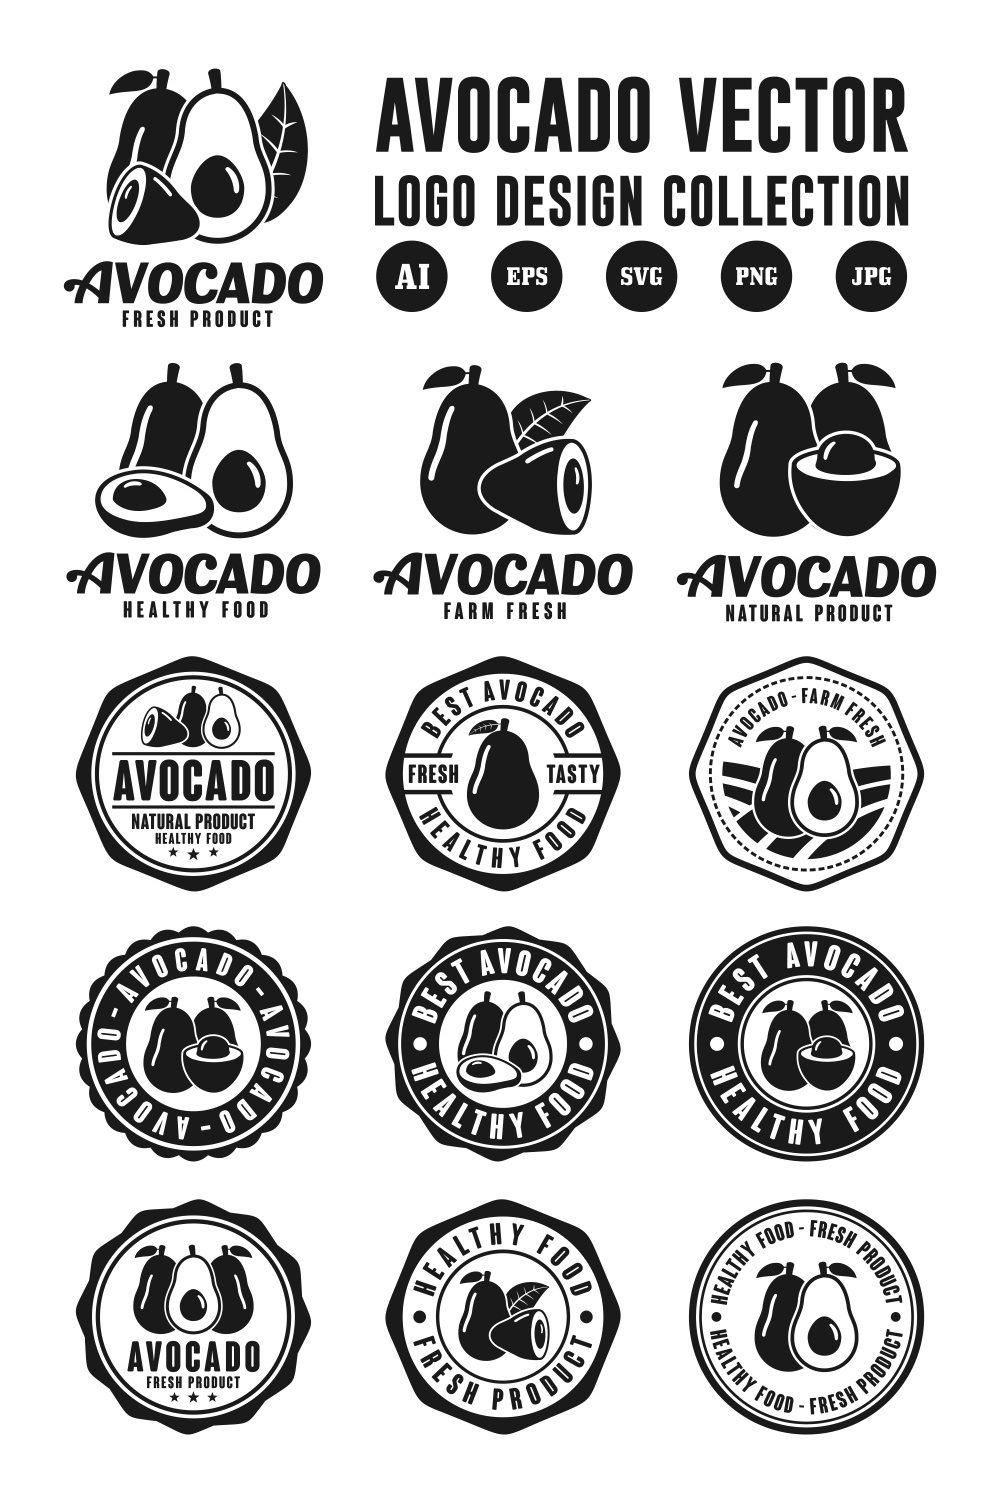 Set Avocado vector logo design collection - $6 pinterest preview image.